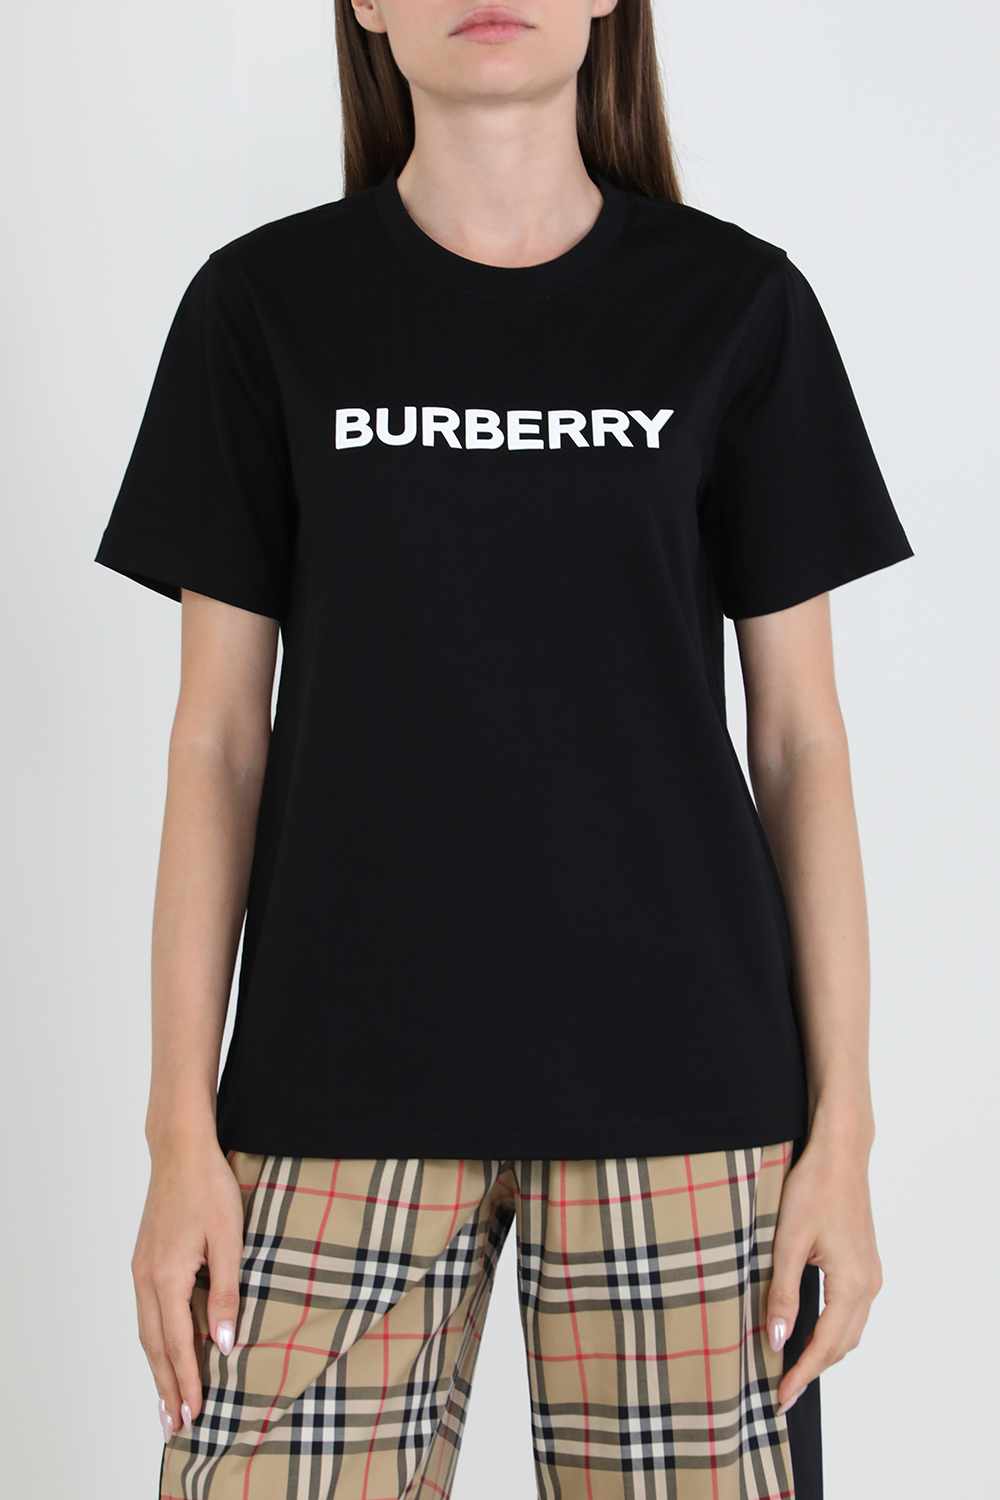 חולצת טי עם הדפס BURBERRY